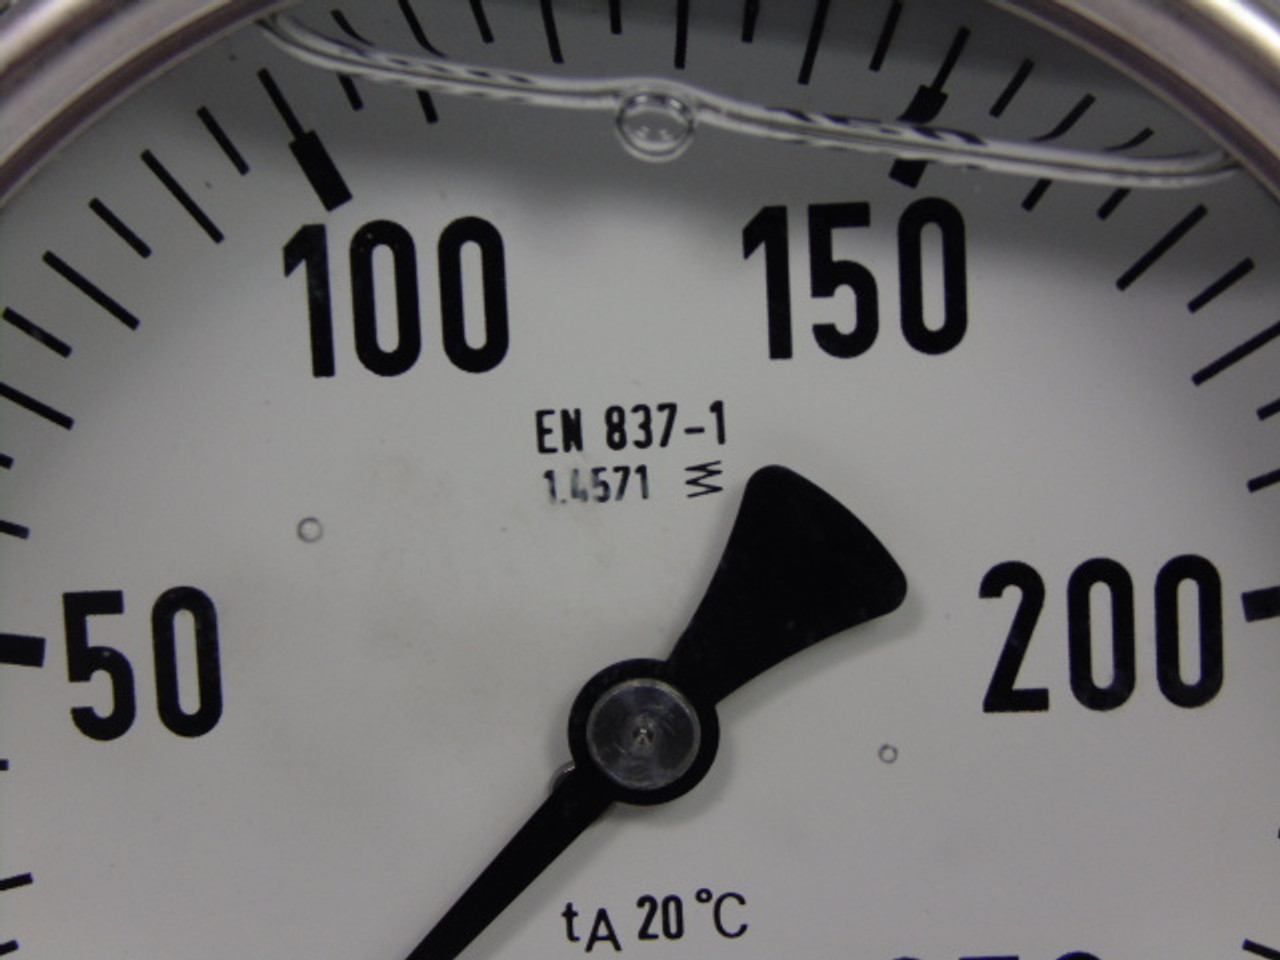 Generic EN-837-1/0-250 Pressure Gauge 0 to 250 Bar USED